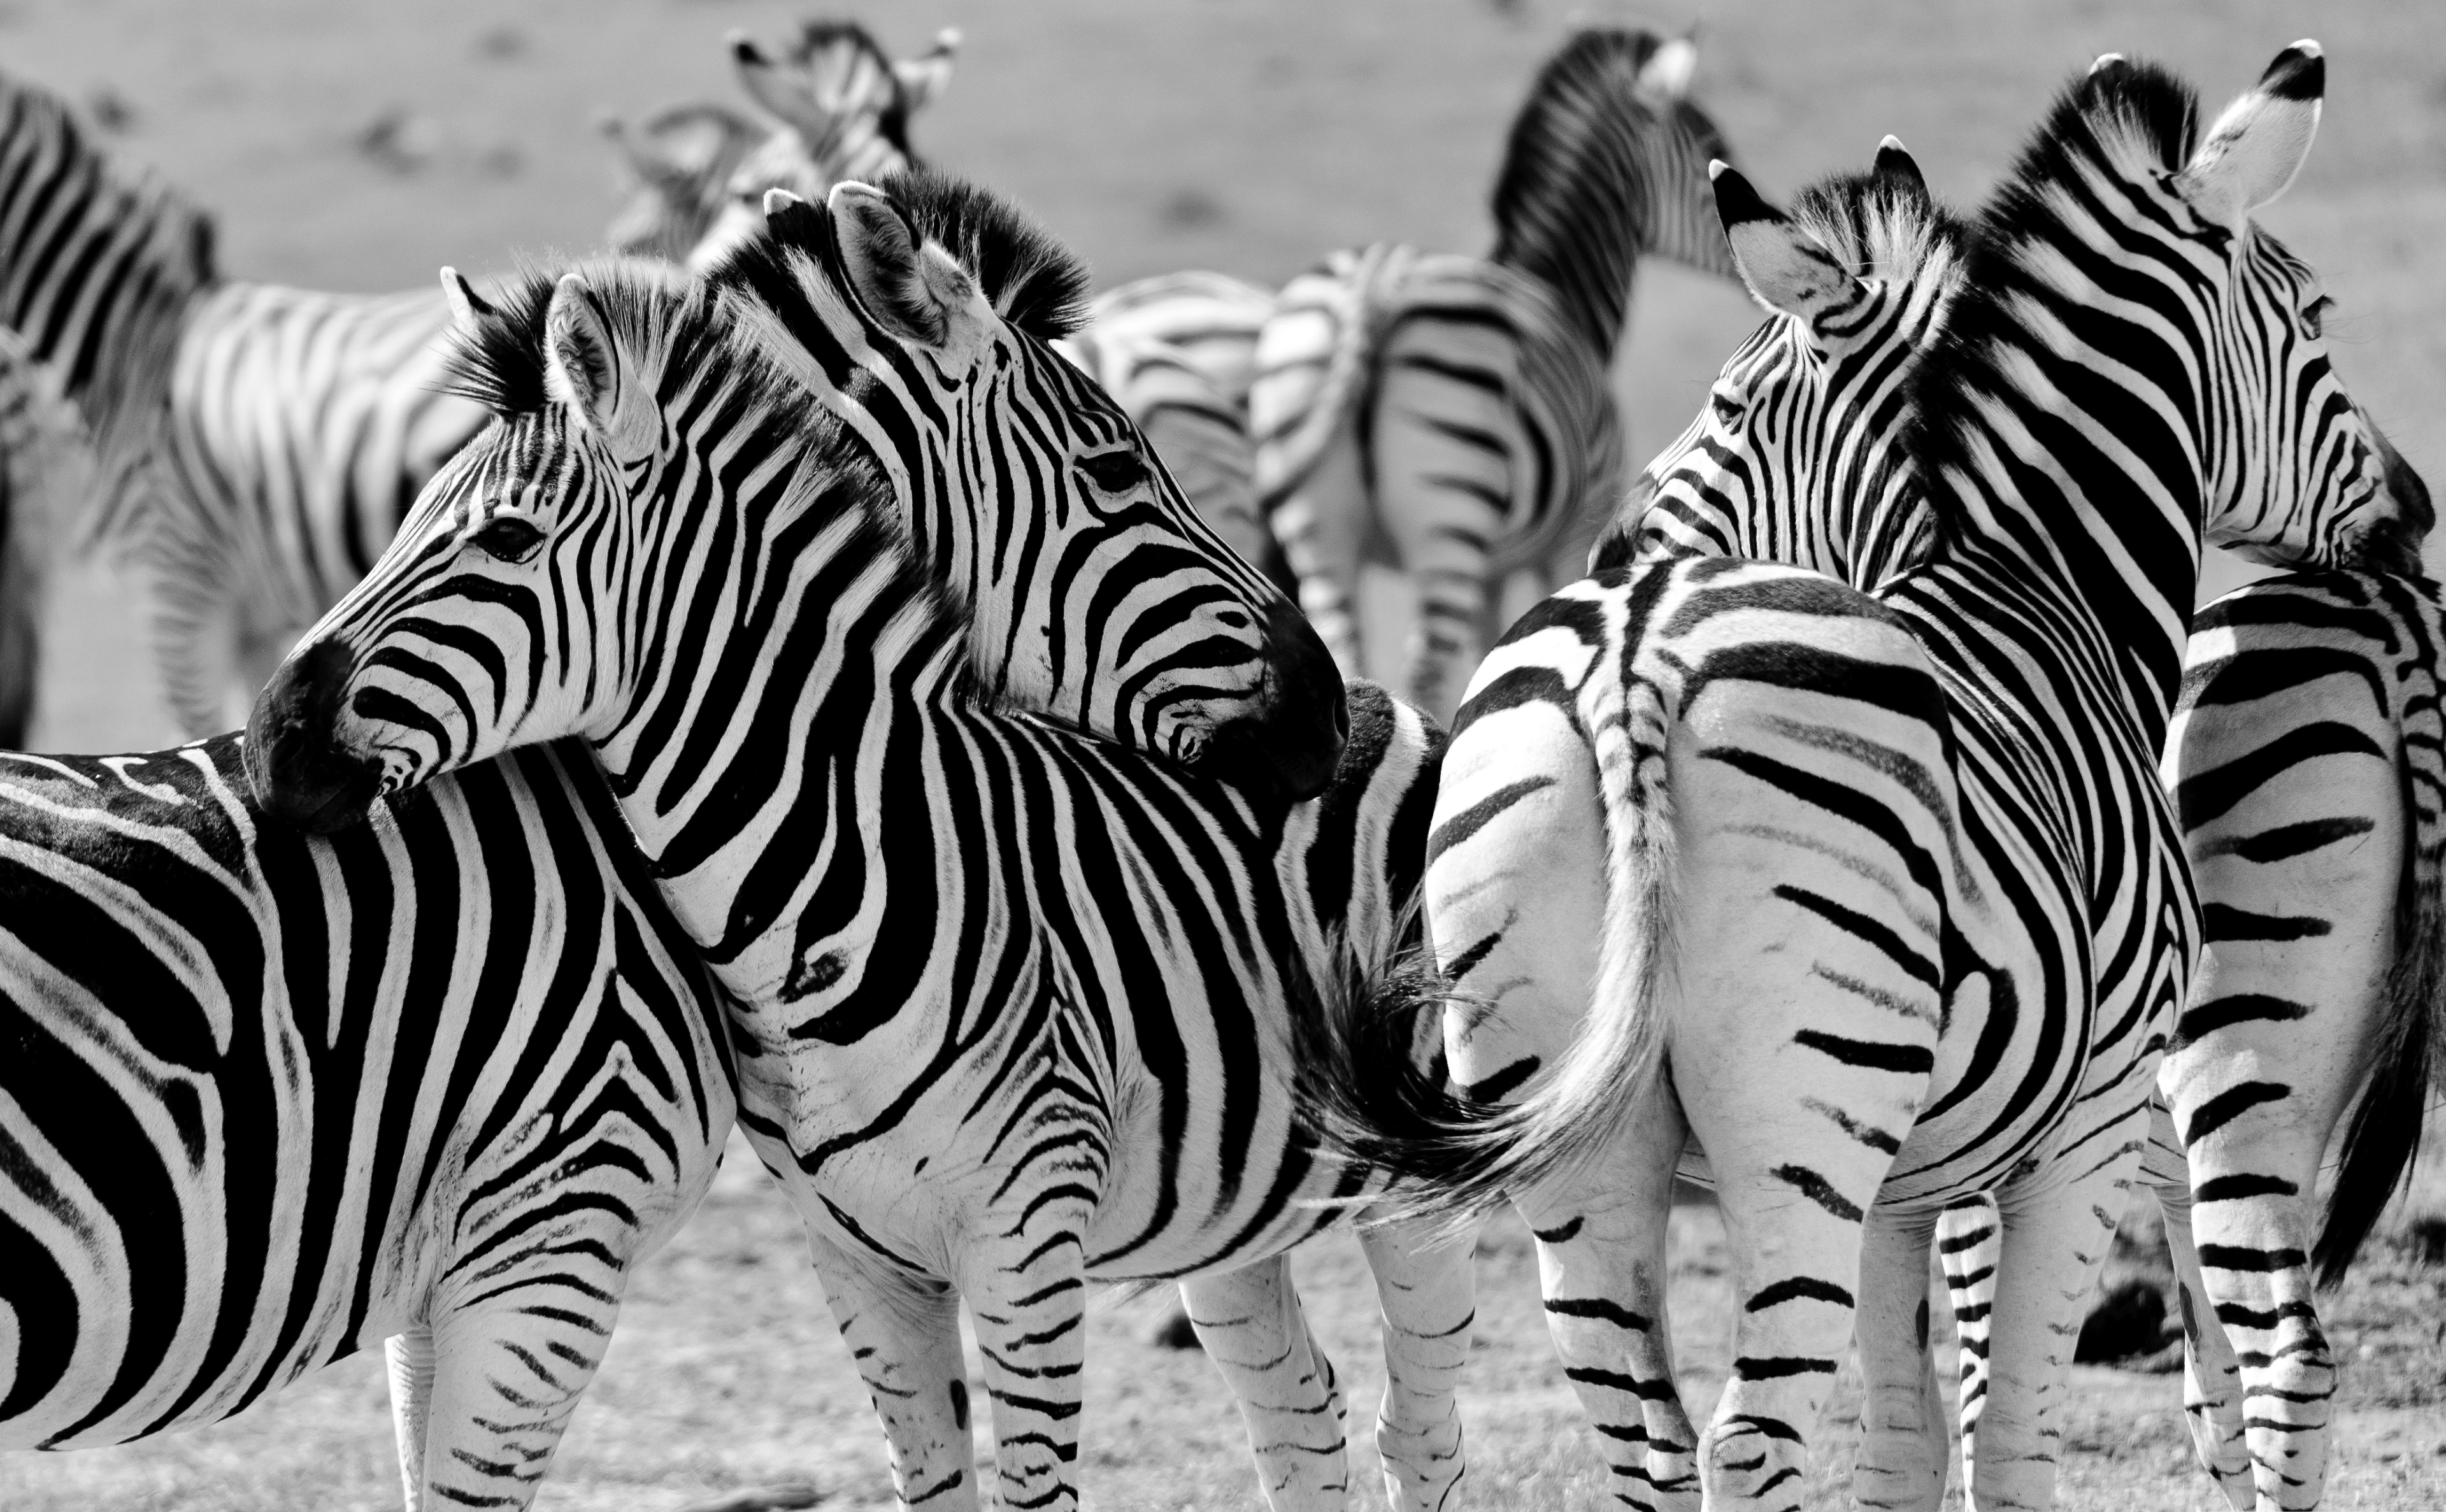 Download mobile wallpaper Zebra, Animal, Black & White for free.